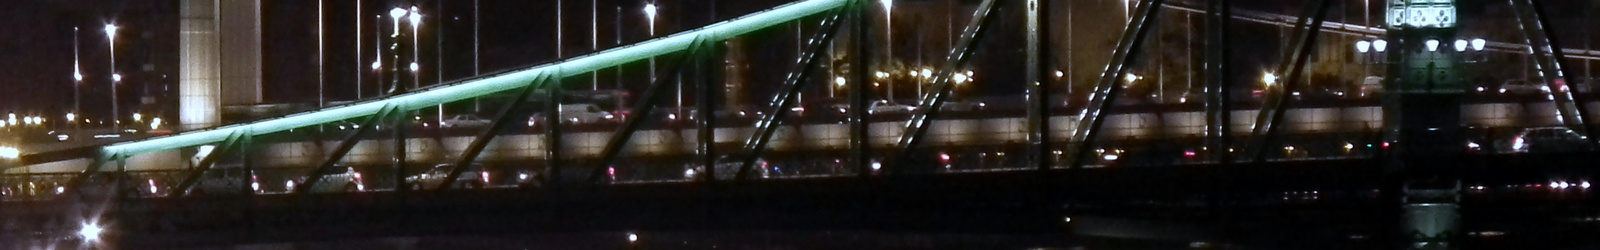 Emeletes budapesti híd